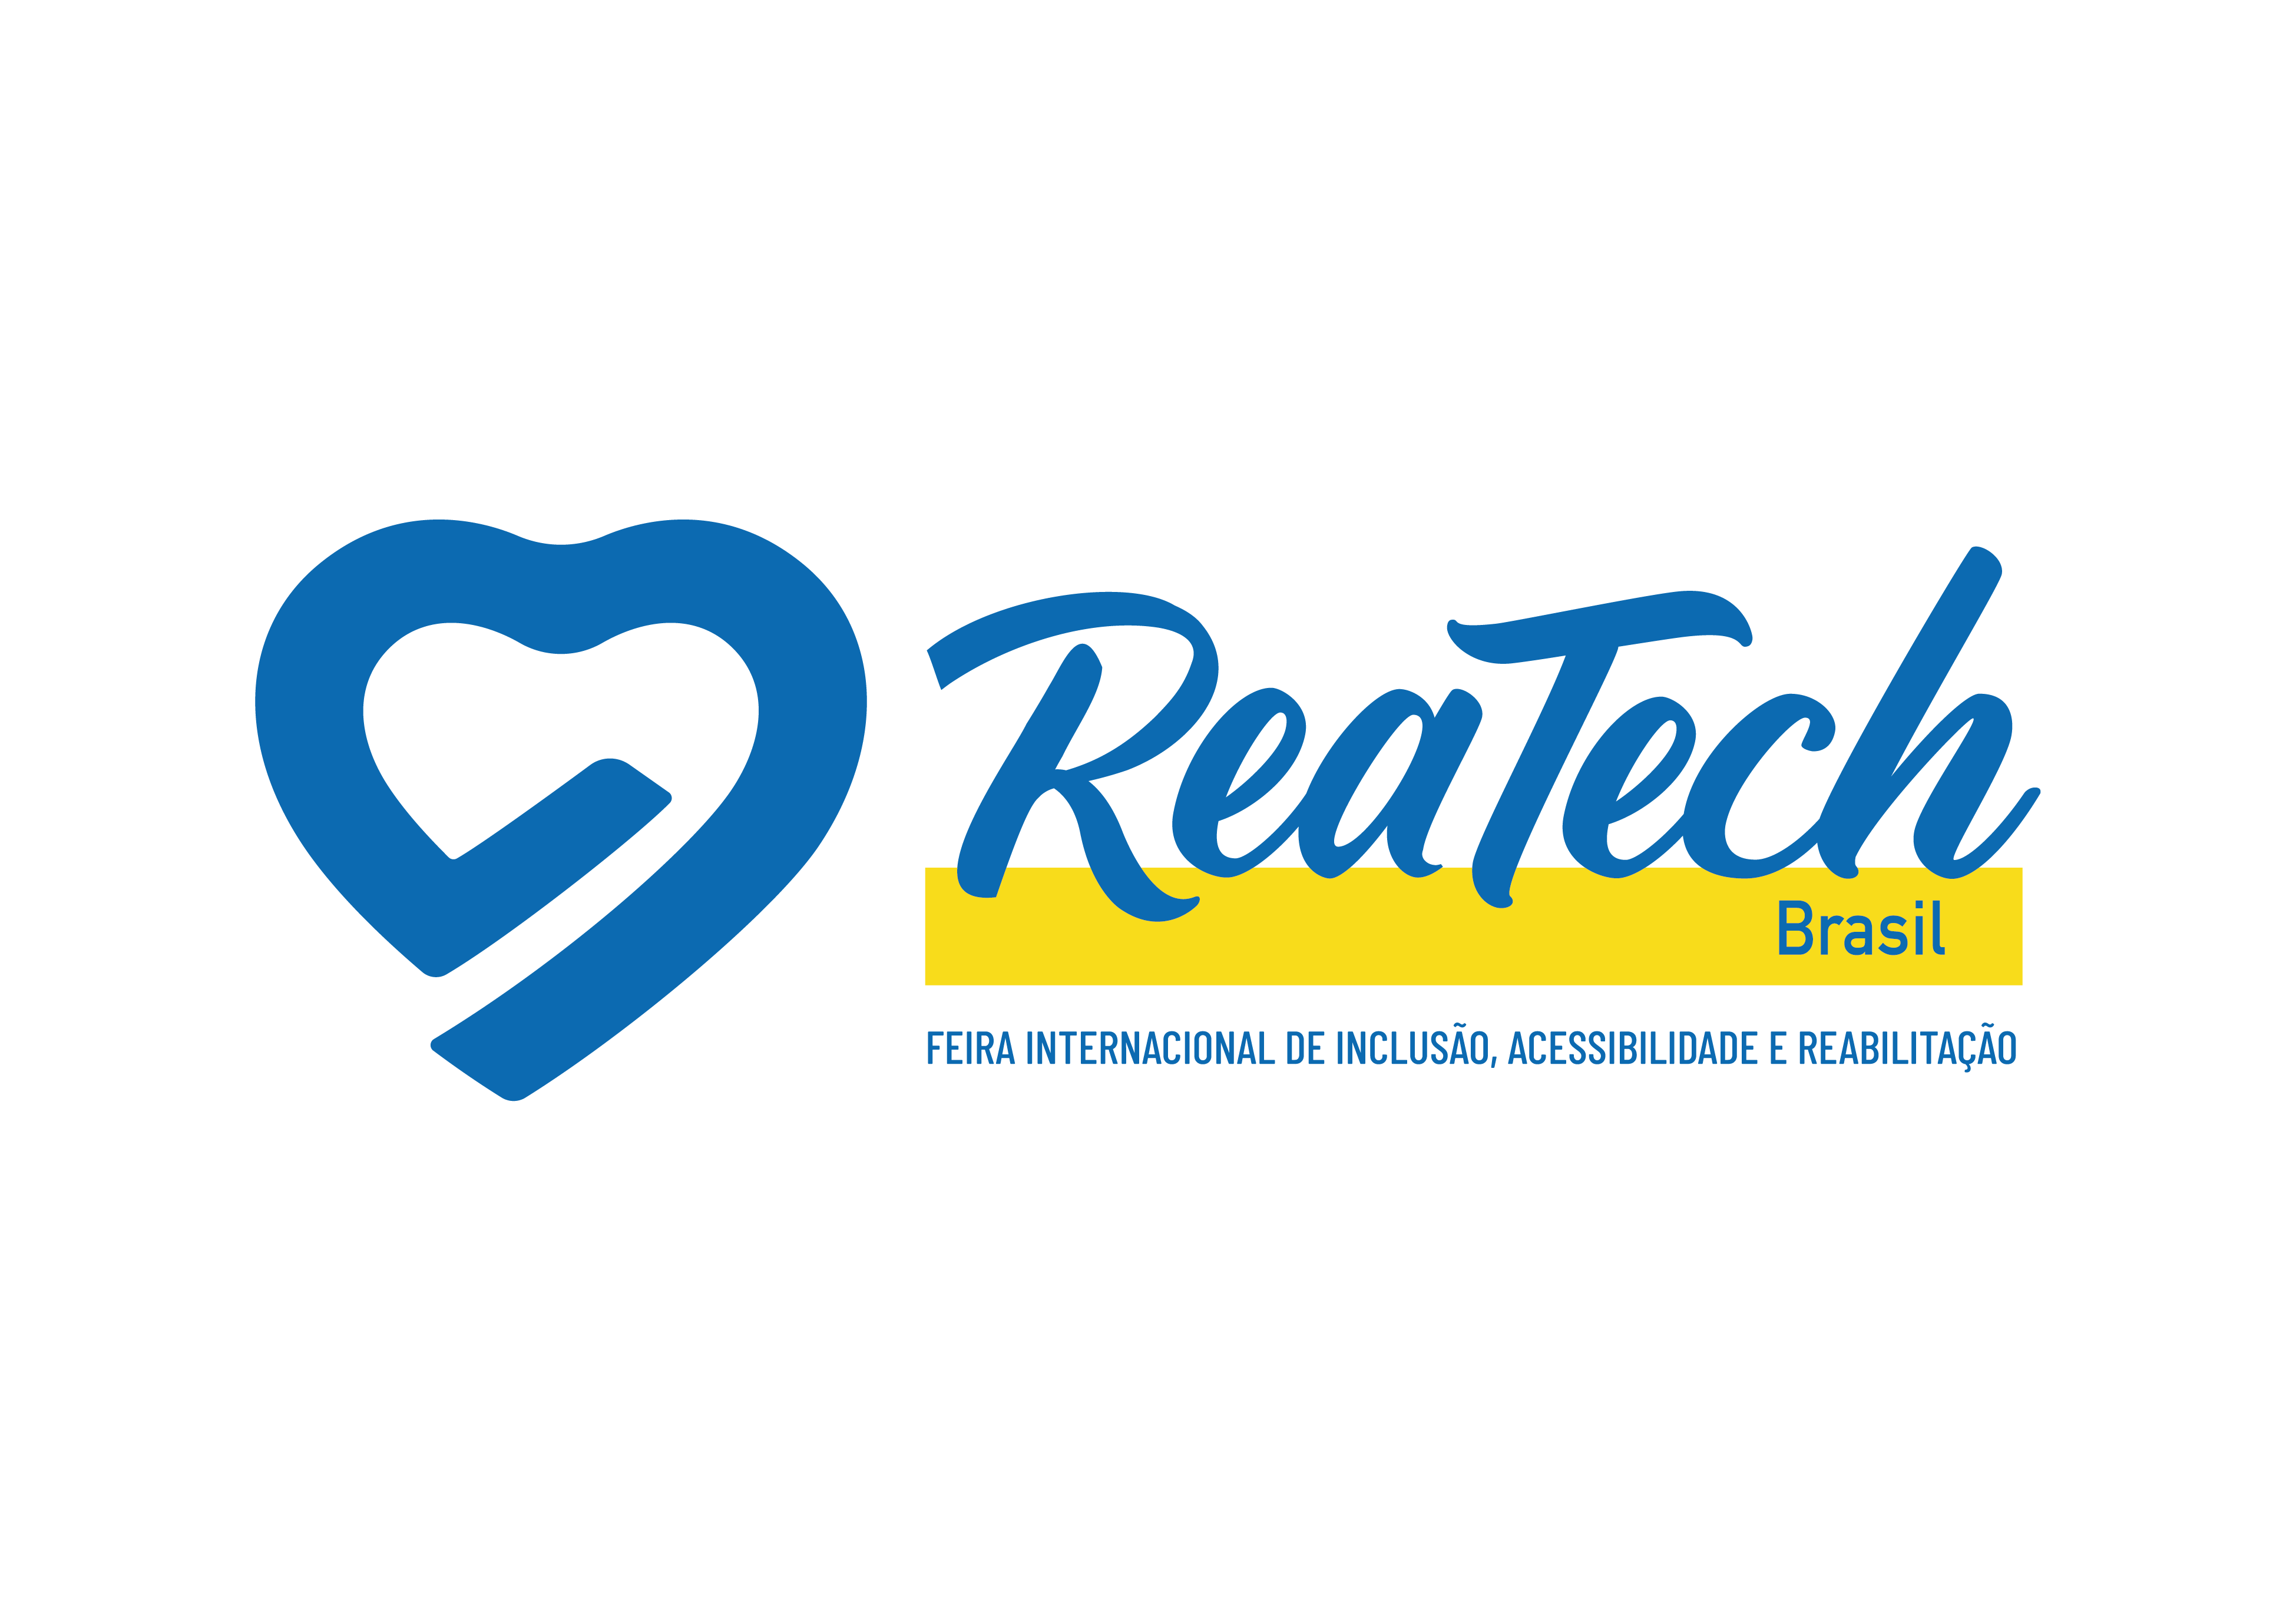 Solenidade de abertura da 18ª edição da Reatech será realizada às 12h, no portão 3 do São Paulo Expo